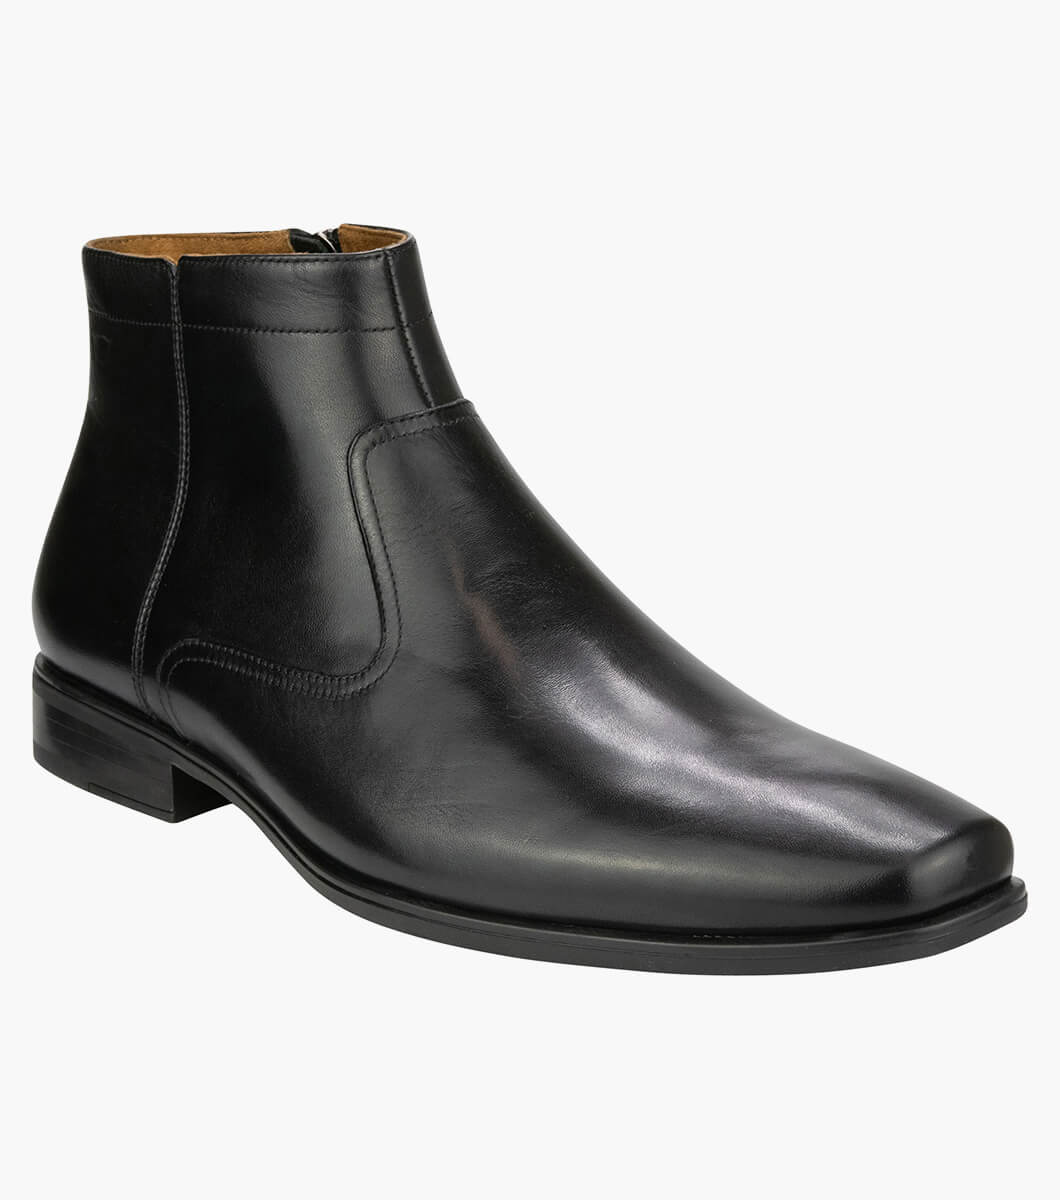 Jackson Zip Boot Plain Toe Zip Boot Men’s Boots | Florsheim.com